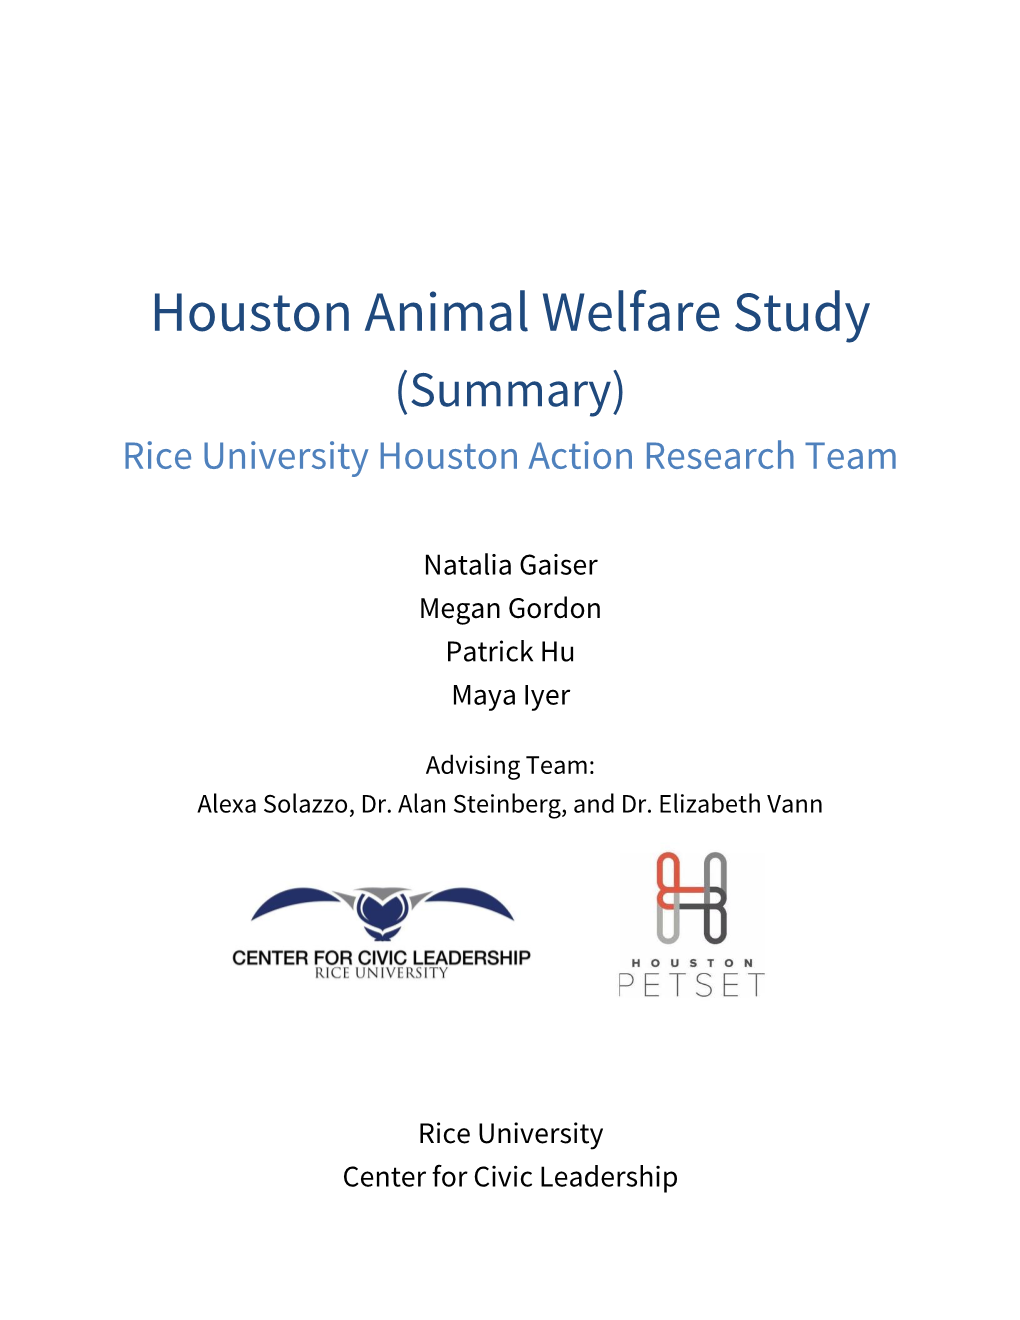 Houston Animal Welfare Study (Summary) Rice University Houston Action Research Team